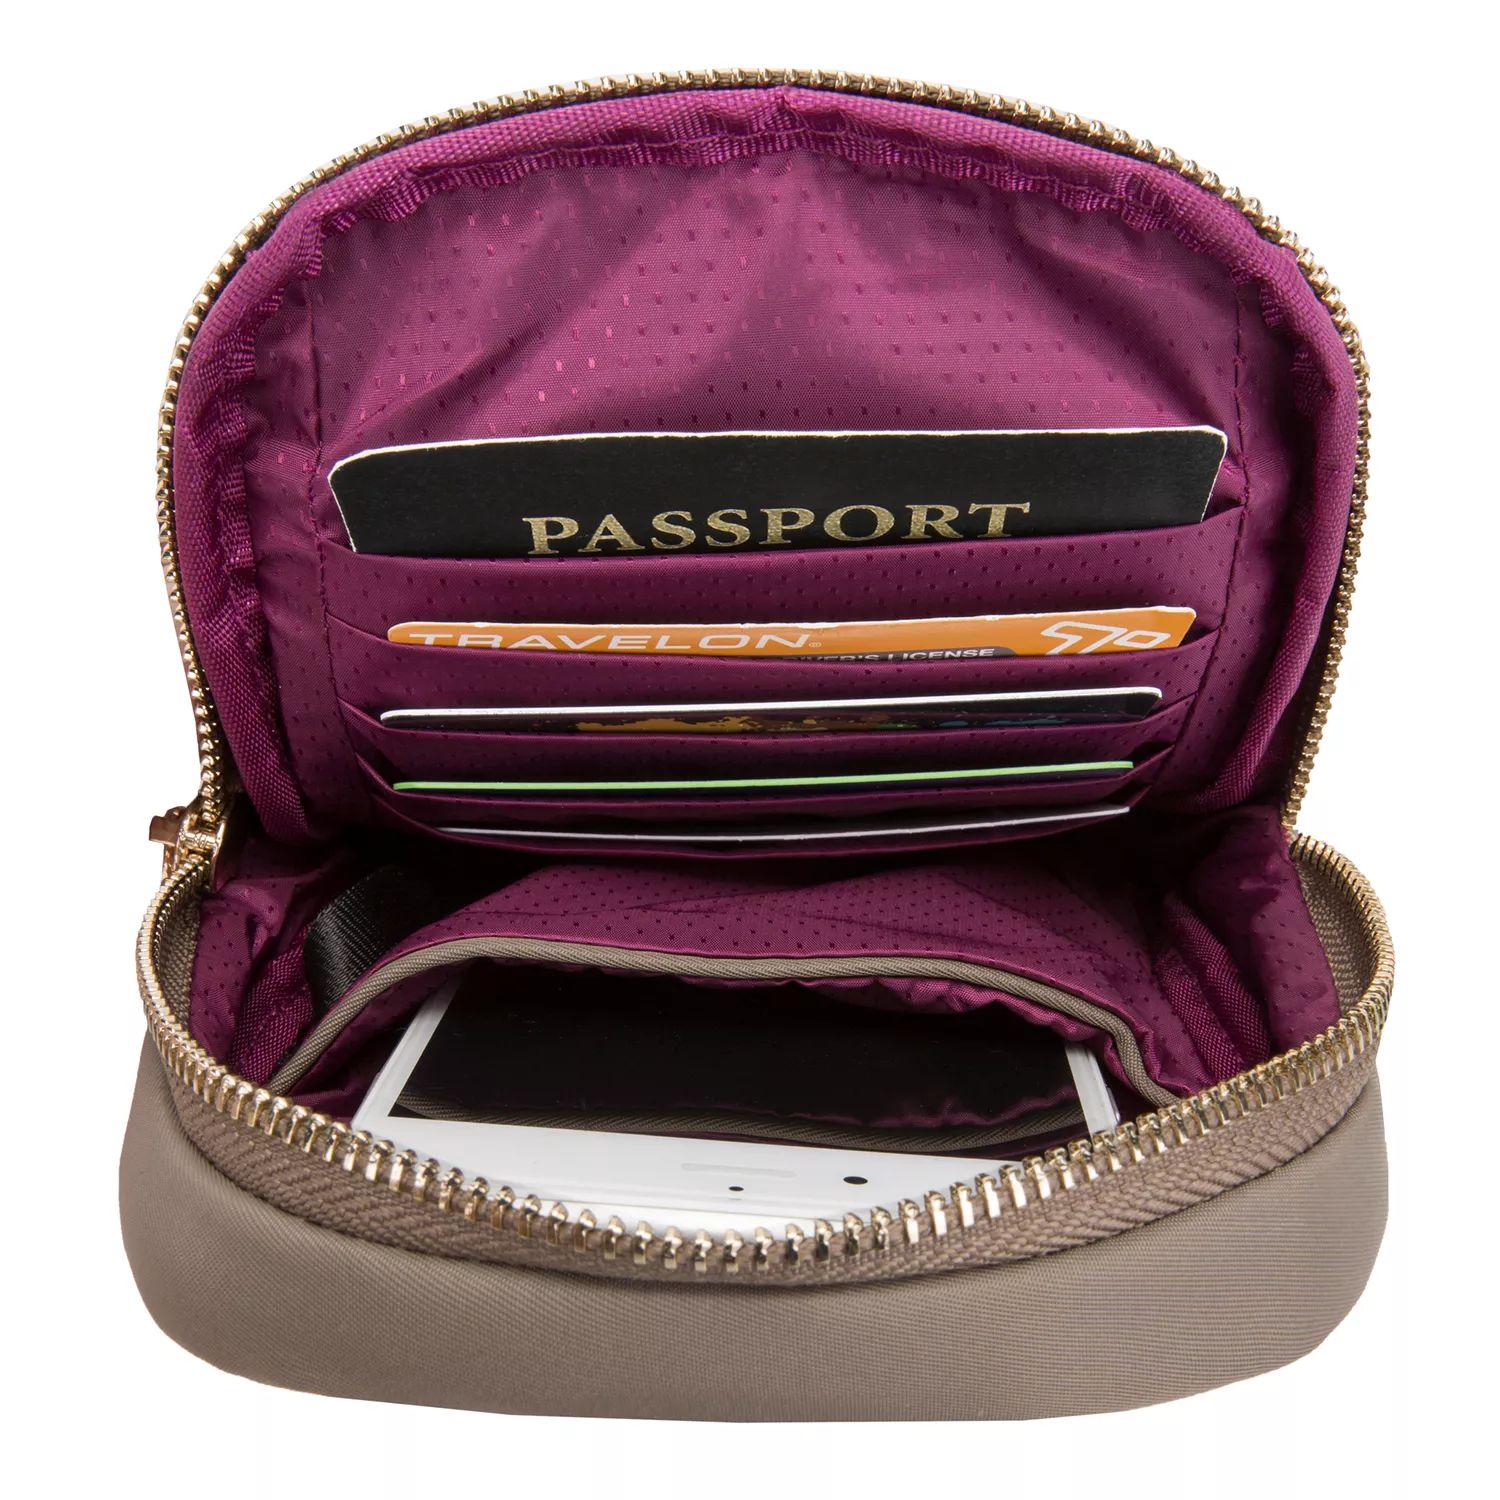 Индивидуальная сумка через плечо с защитой от кражи Travelon, чехол для телефона Travelon